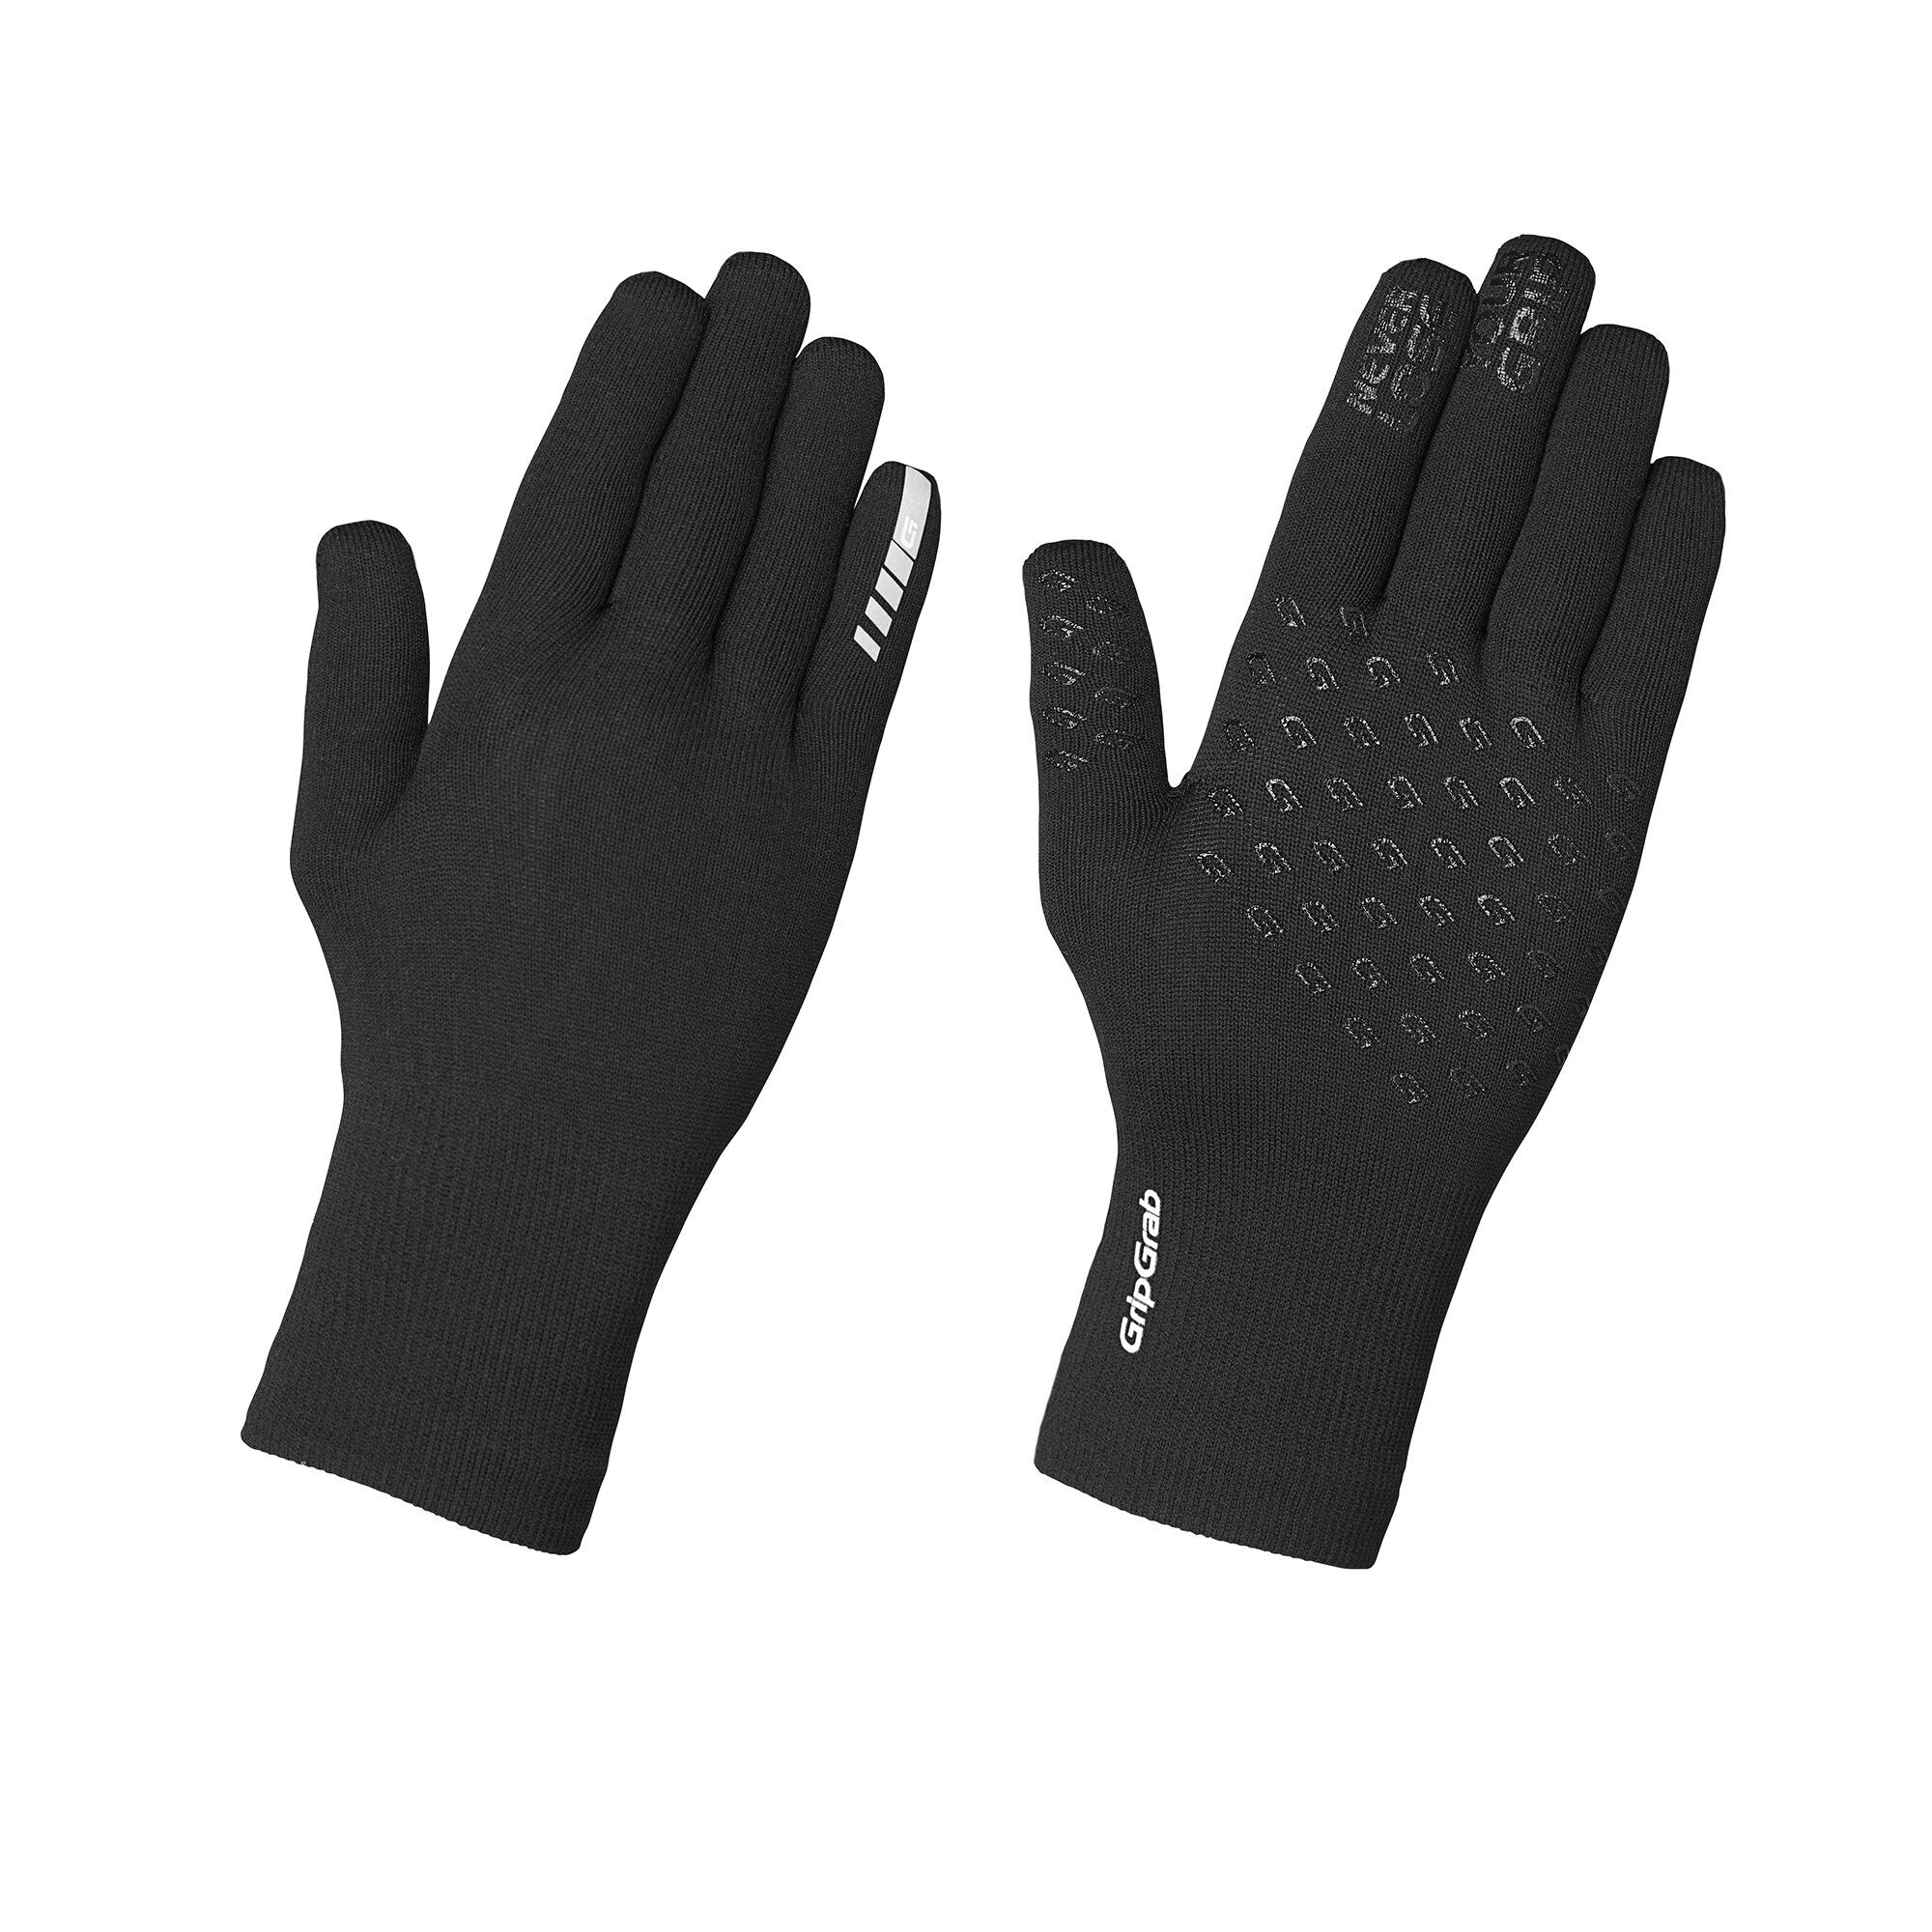 Grip Grab Waterproof Knitted Thermal Glove - Fahrradhandschuhe